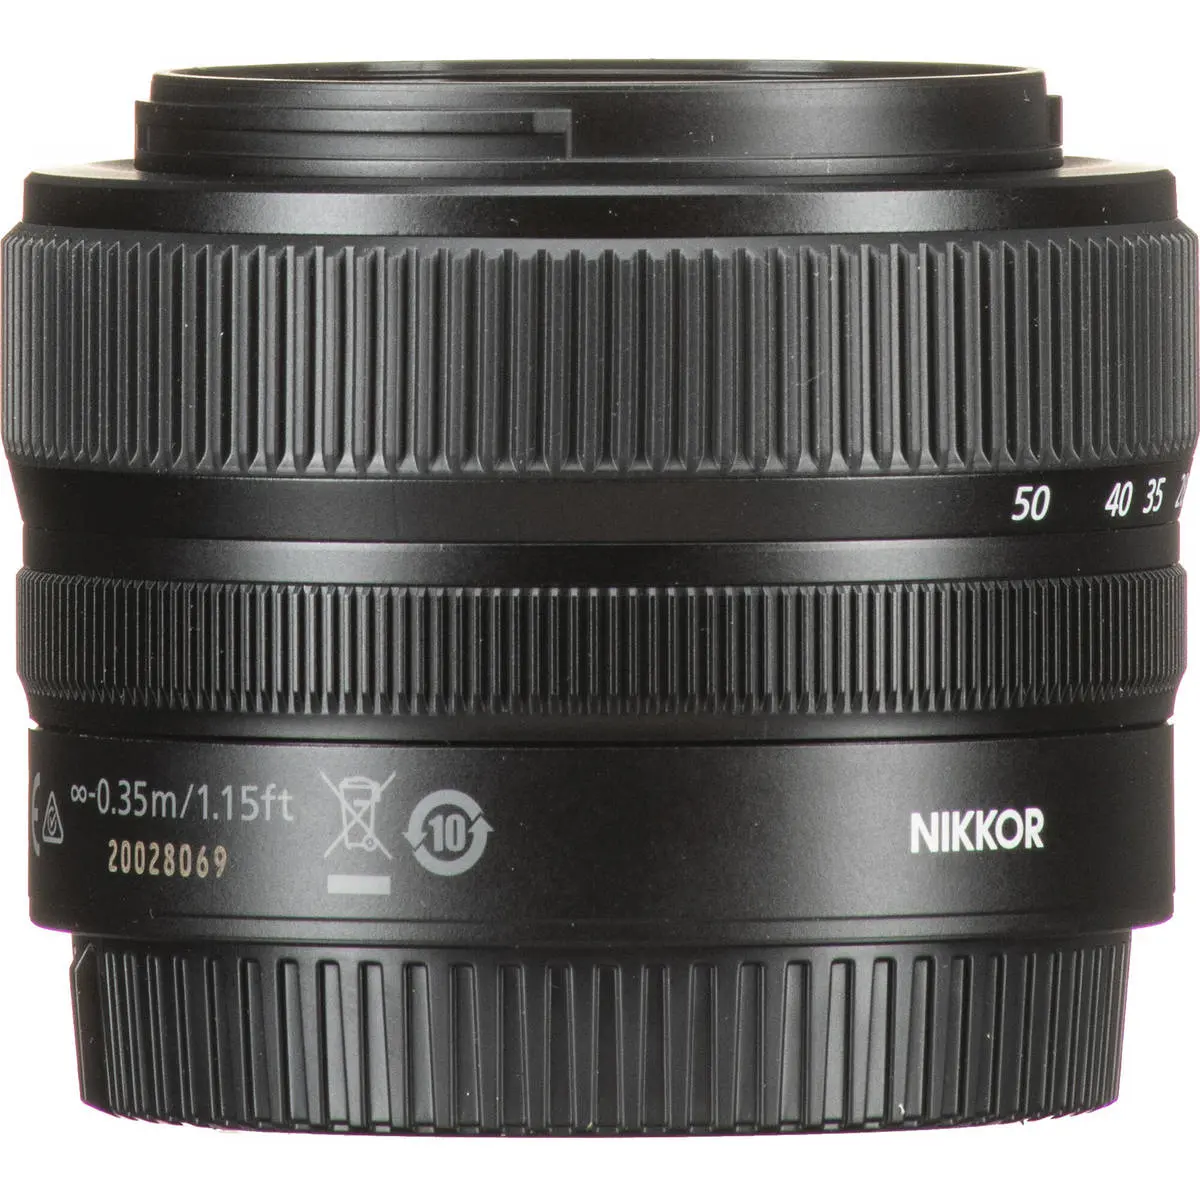 5. Nikon NIKKOR Z 24-50MM F/4-6.3 (kit lens)